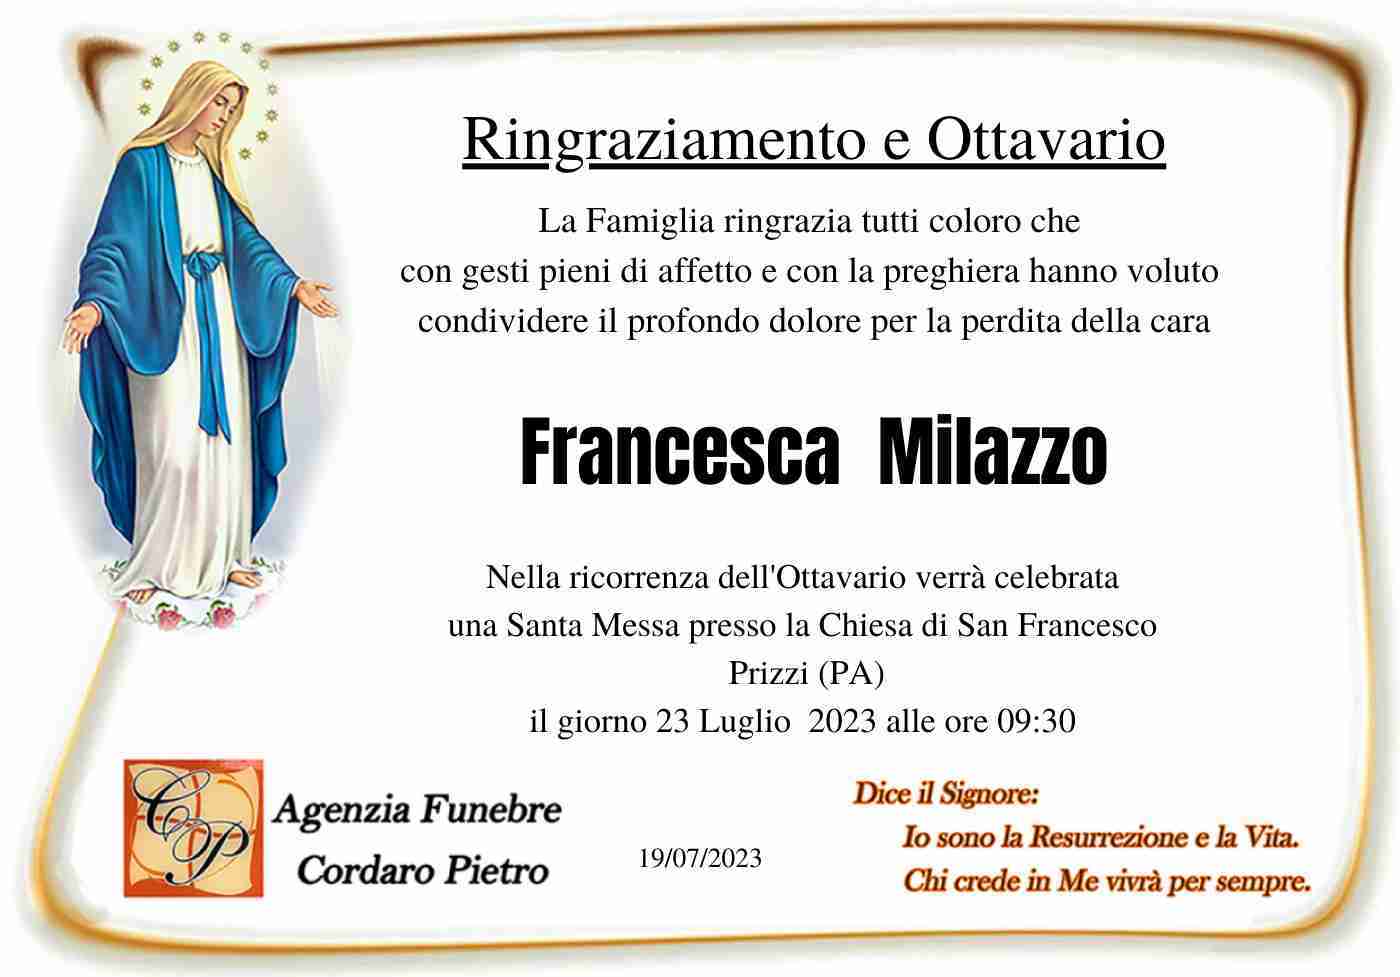 Francesca Milazzo